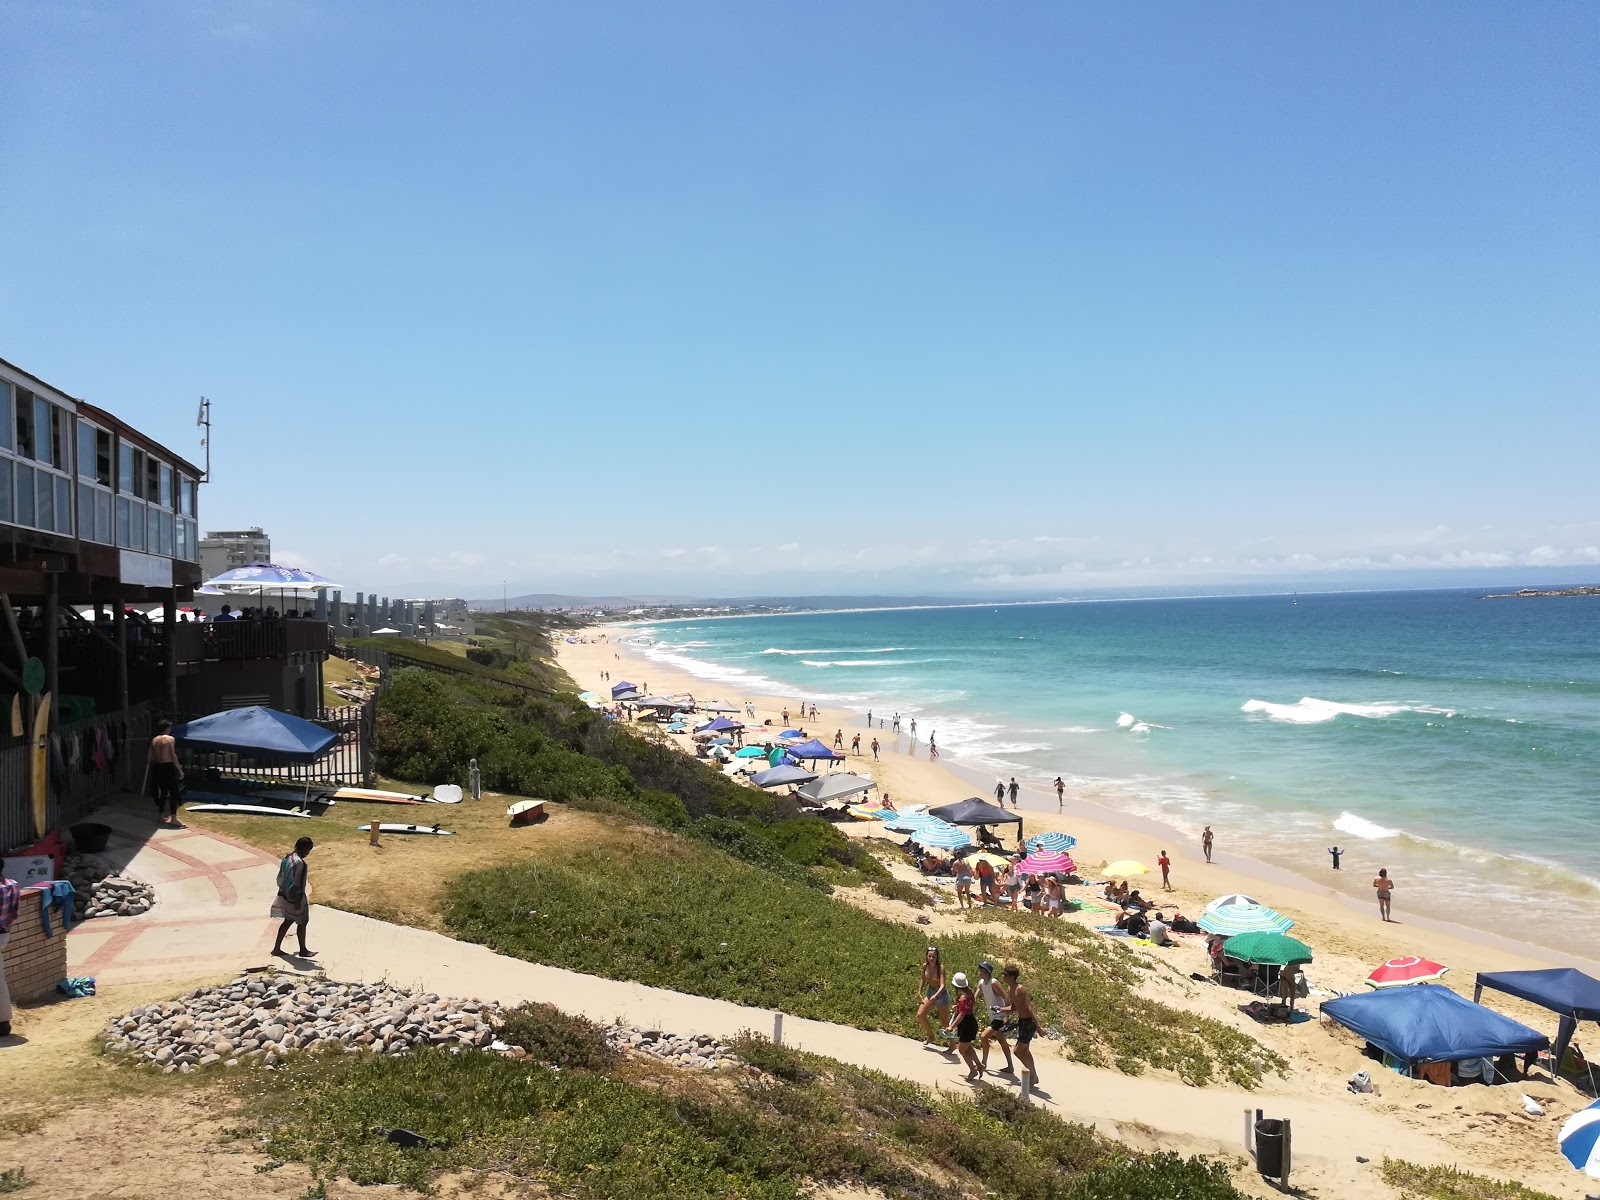 Diaz beach'in fotoğrafı geniş plaj ile birlikte